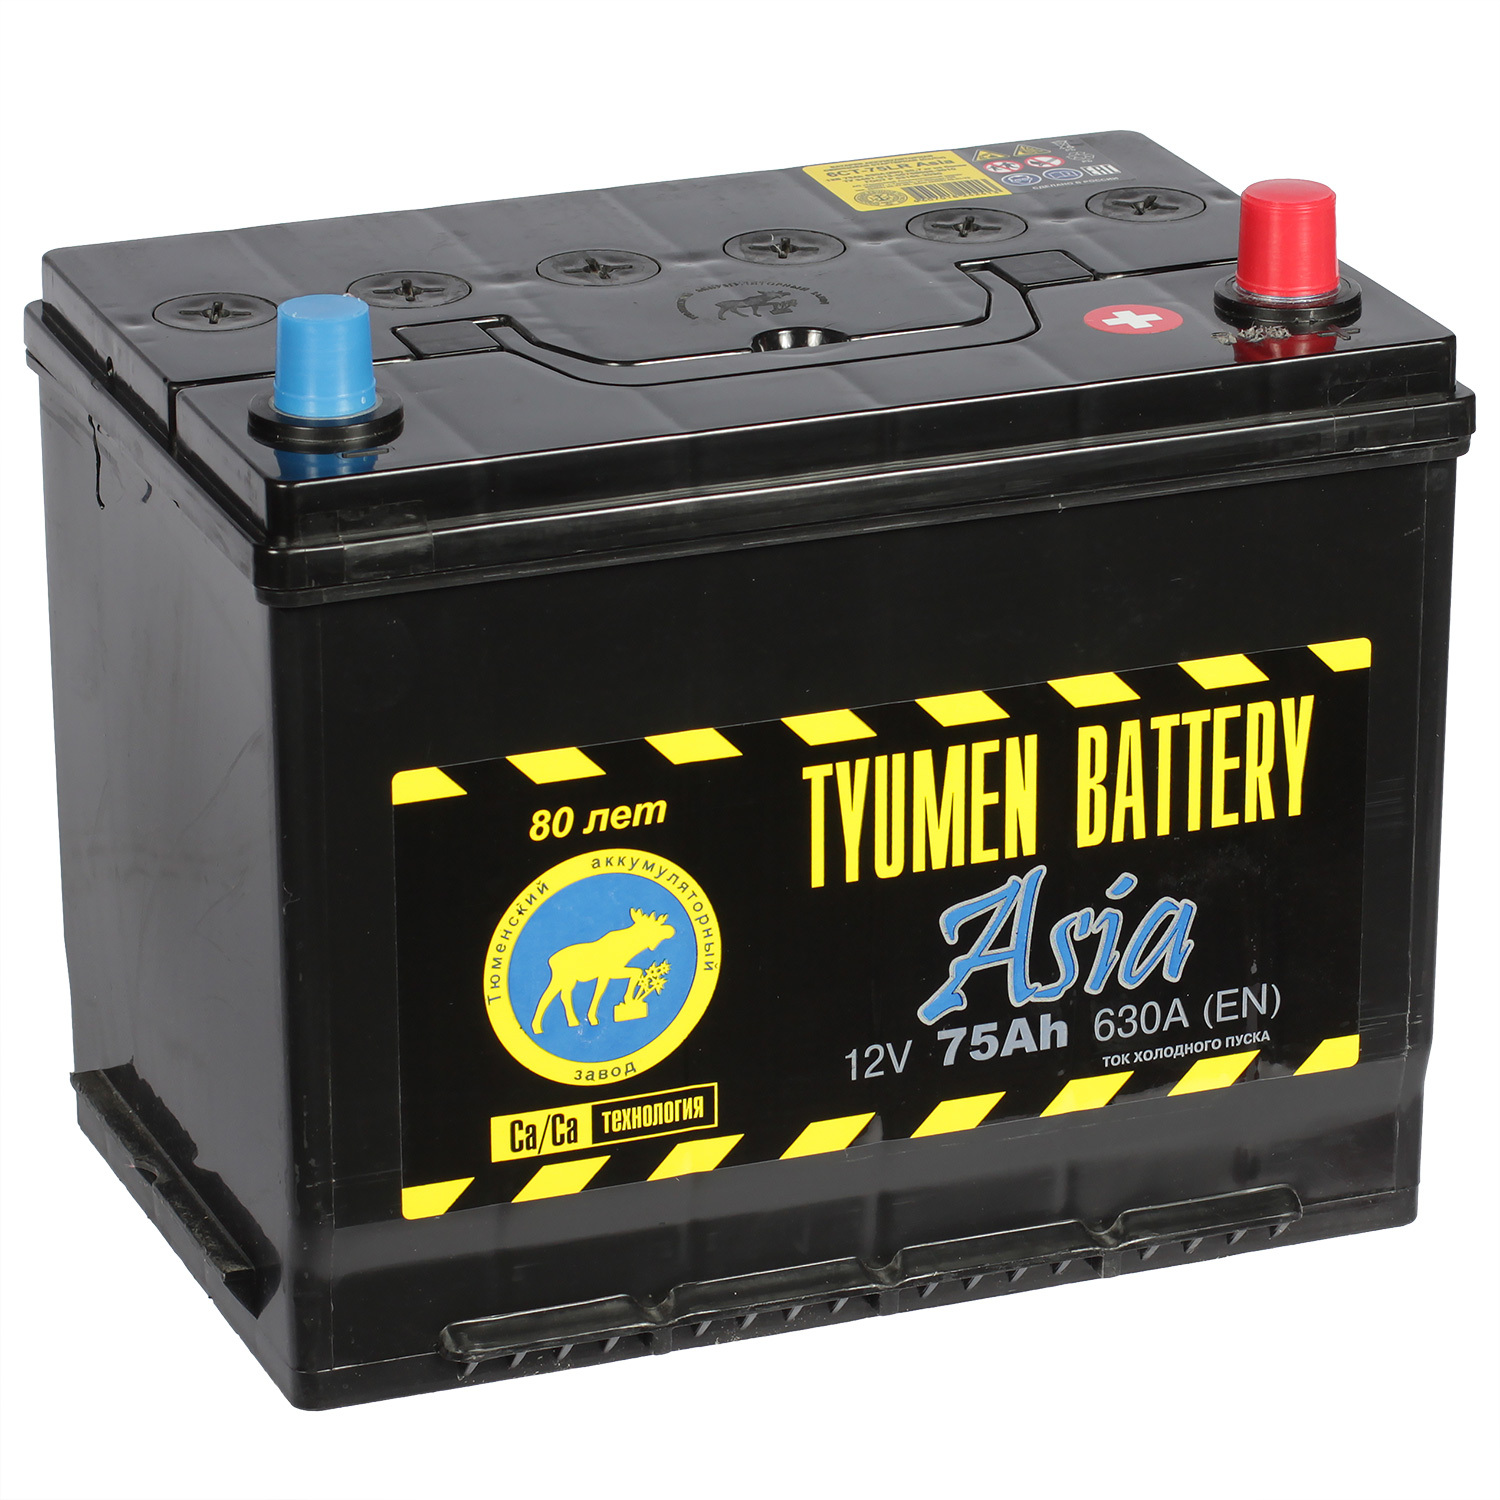 Tyumen Battery Автомобильный аккумулятор Tyumen Battery Asia 75 Ач обратная полярность D26L цена и фото